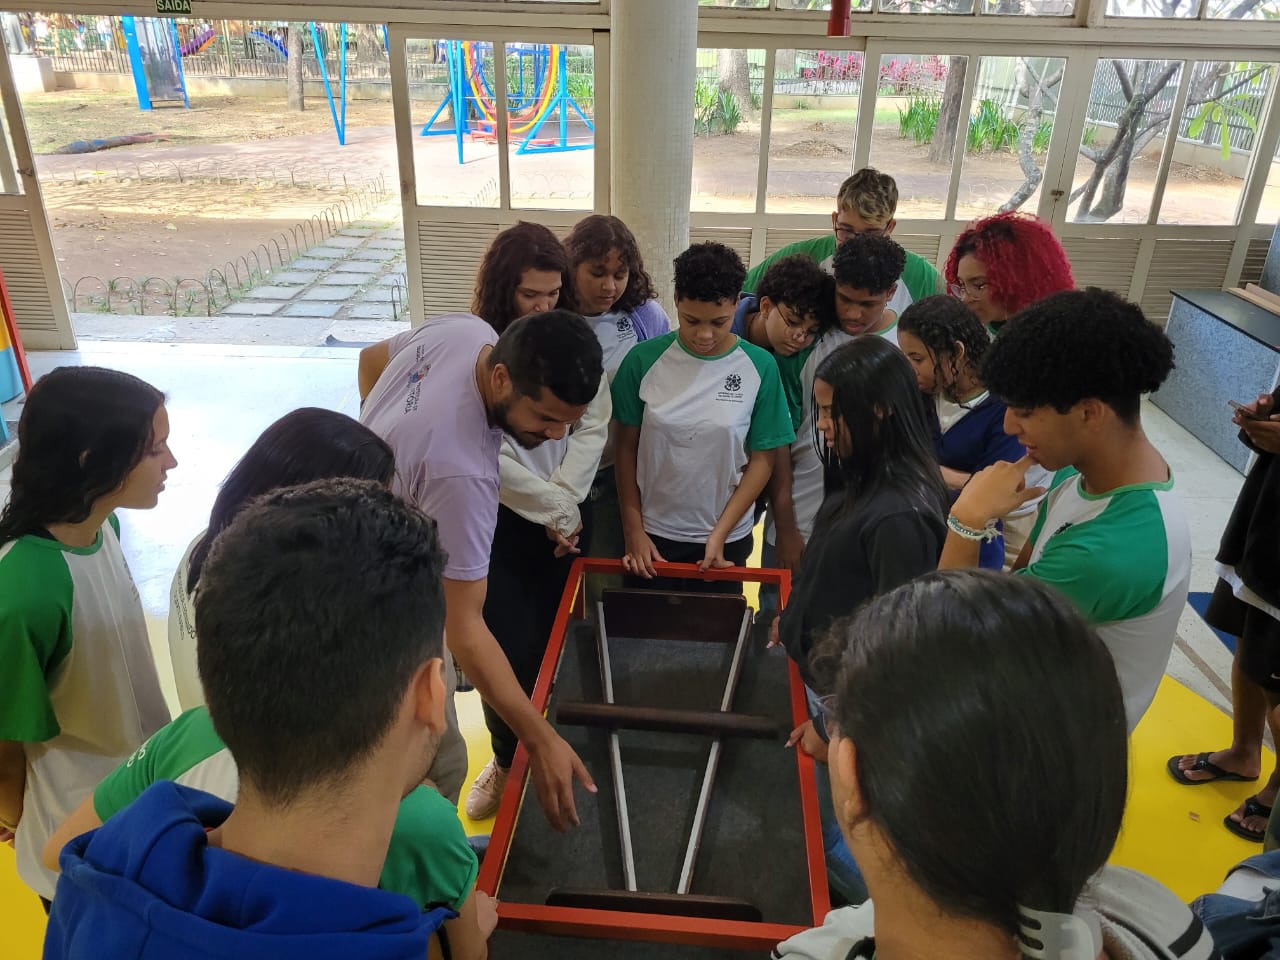 Xeque mate: Escola da Vida e Projovem usam xadrez para reduzir a  vulnerabilidade social em Vitória - CÂMARA MUNICIPAL DE VITÓRIA - ES